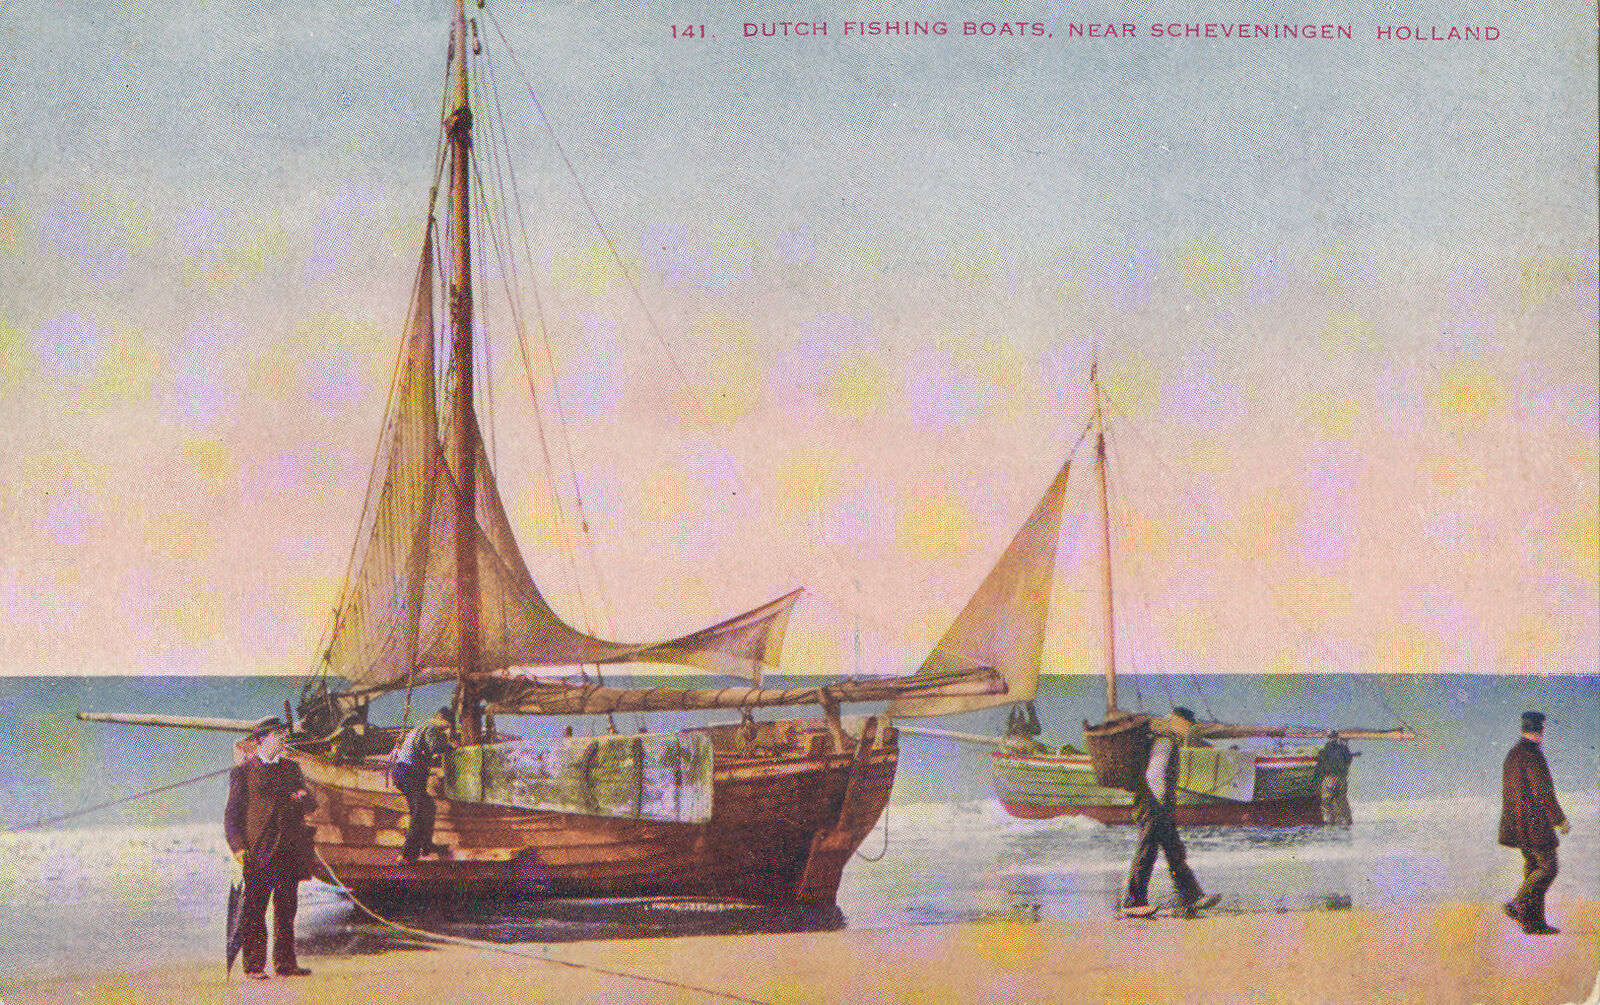 Dutch Fishing Boats near Scheveningen Holland postcard #141